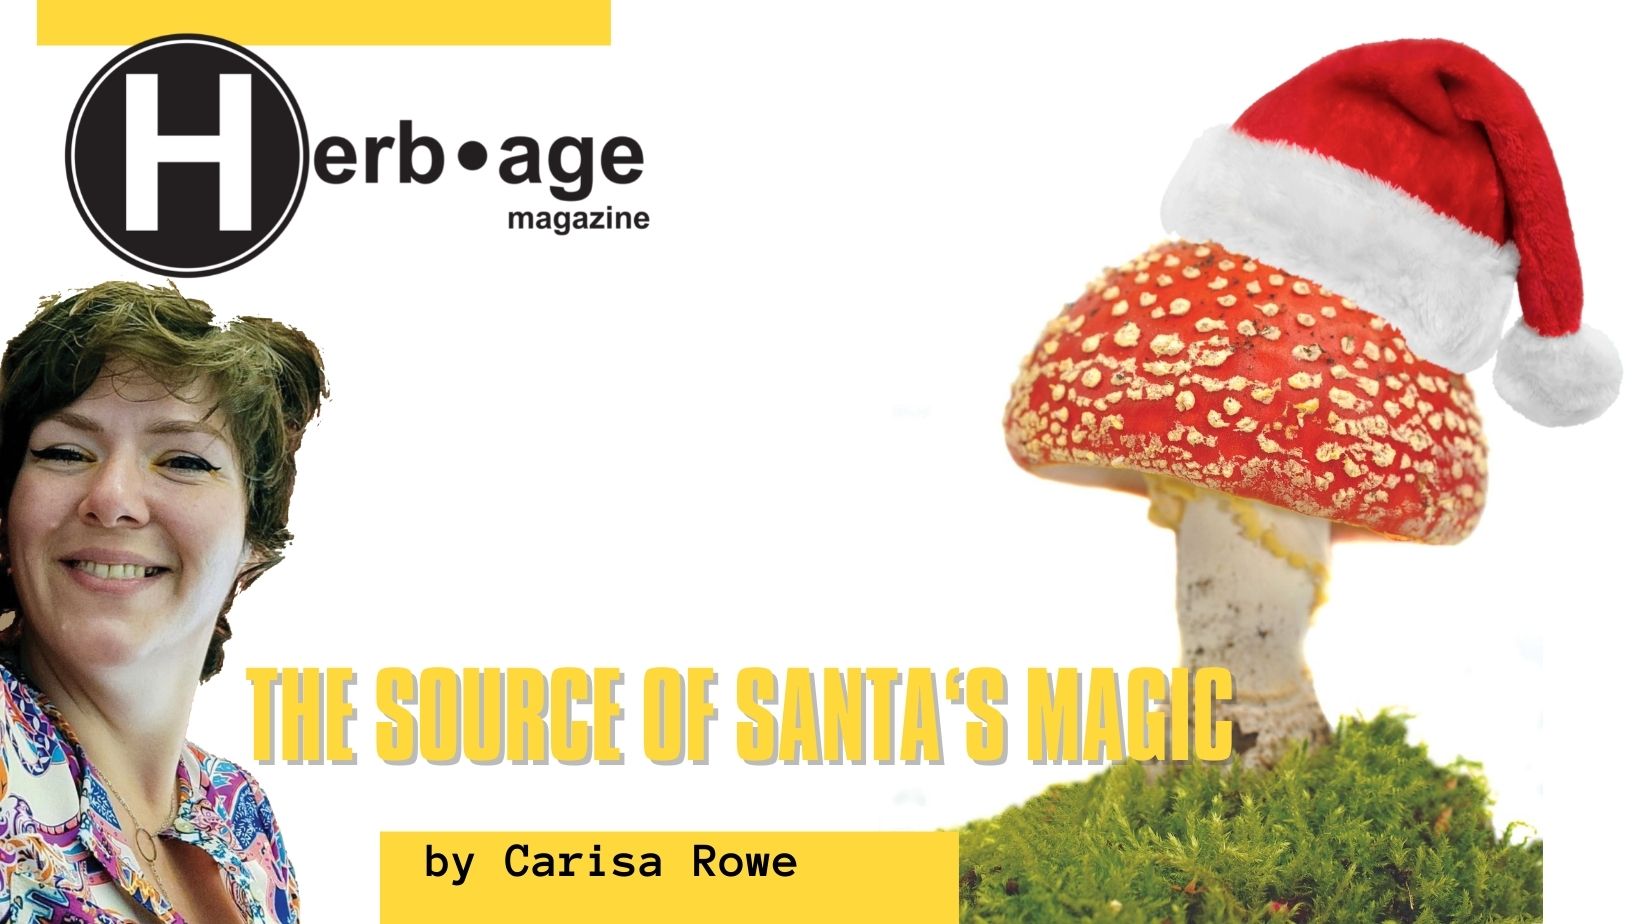 The Source of Santa’s Magic